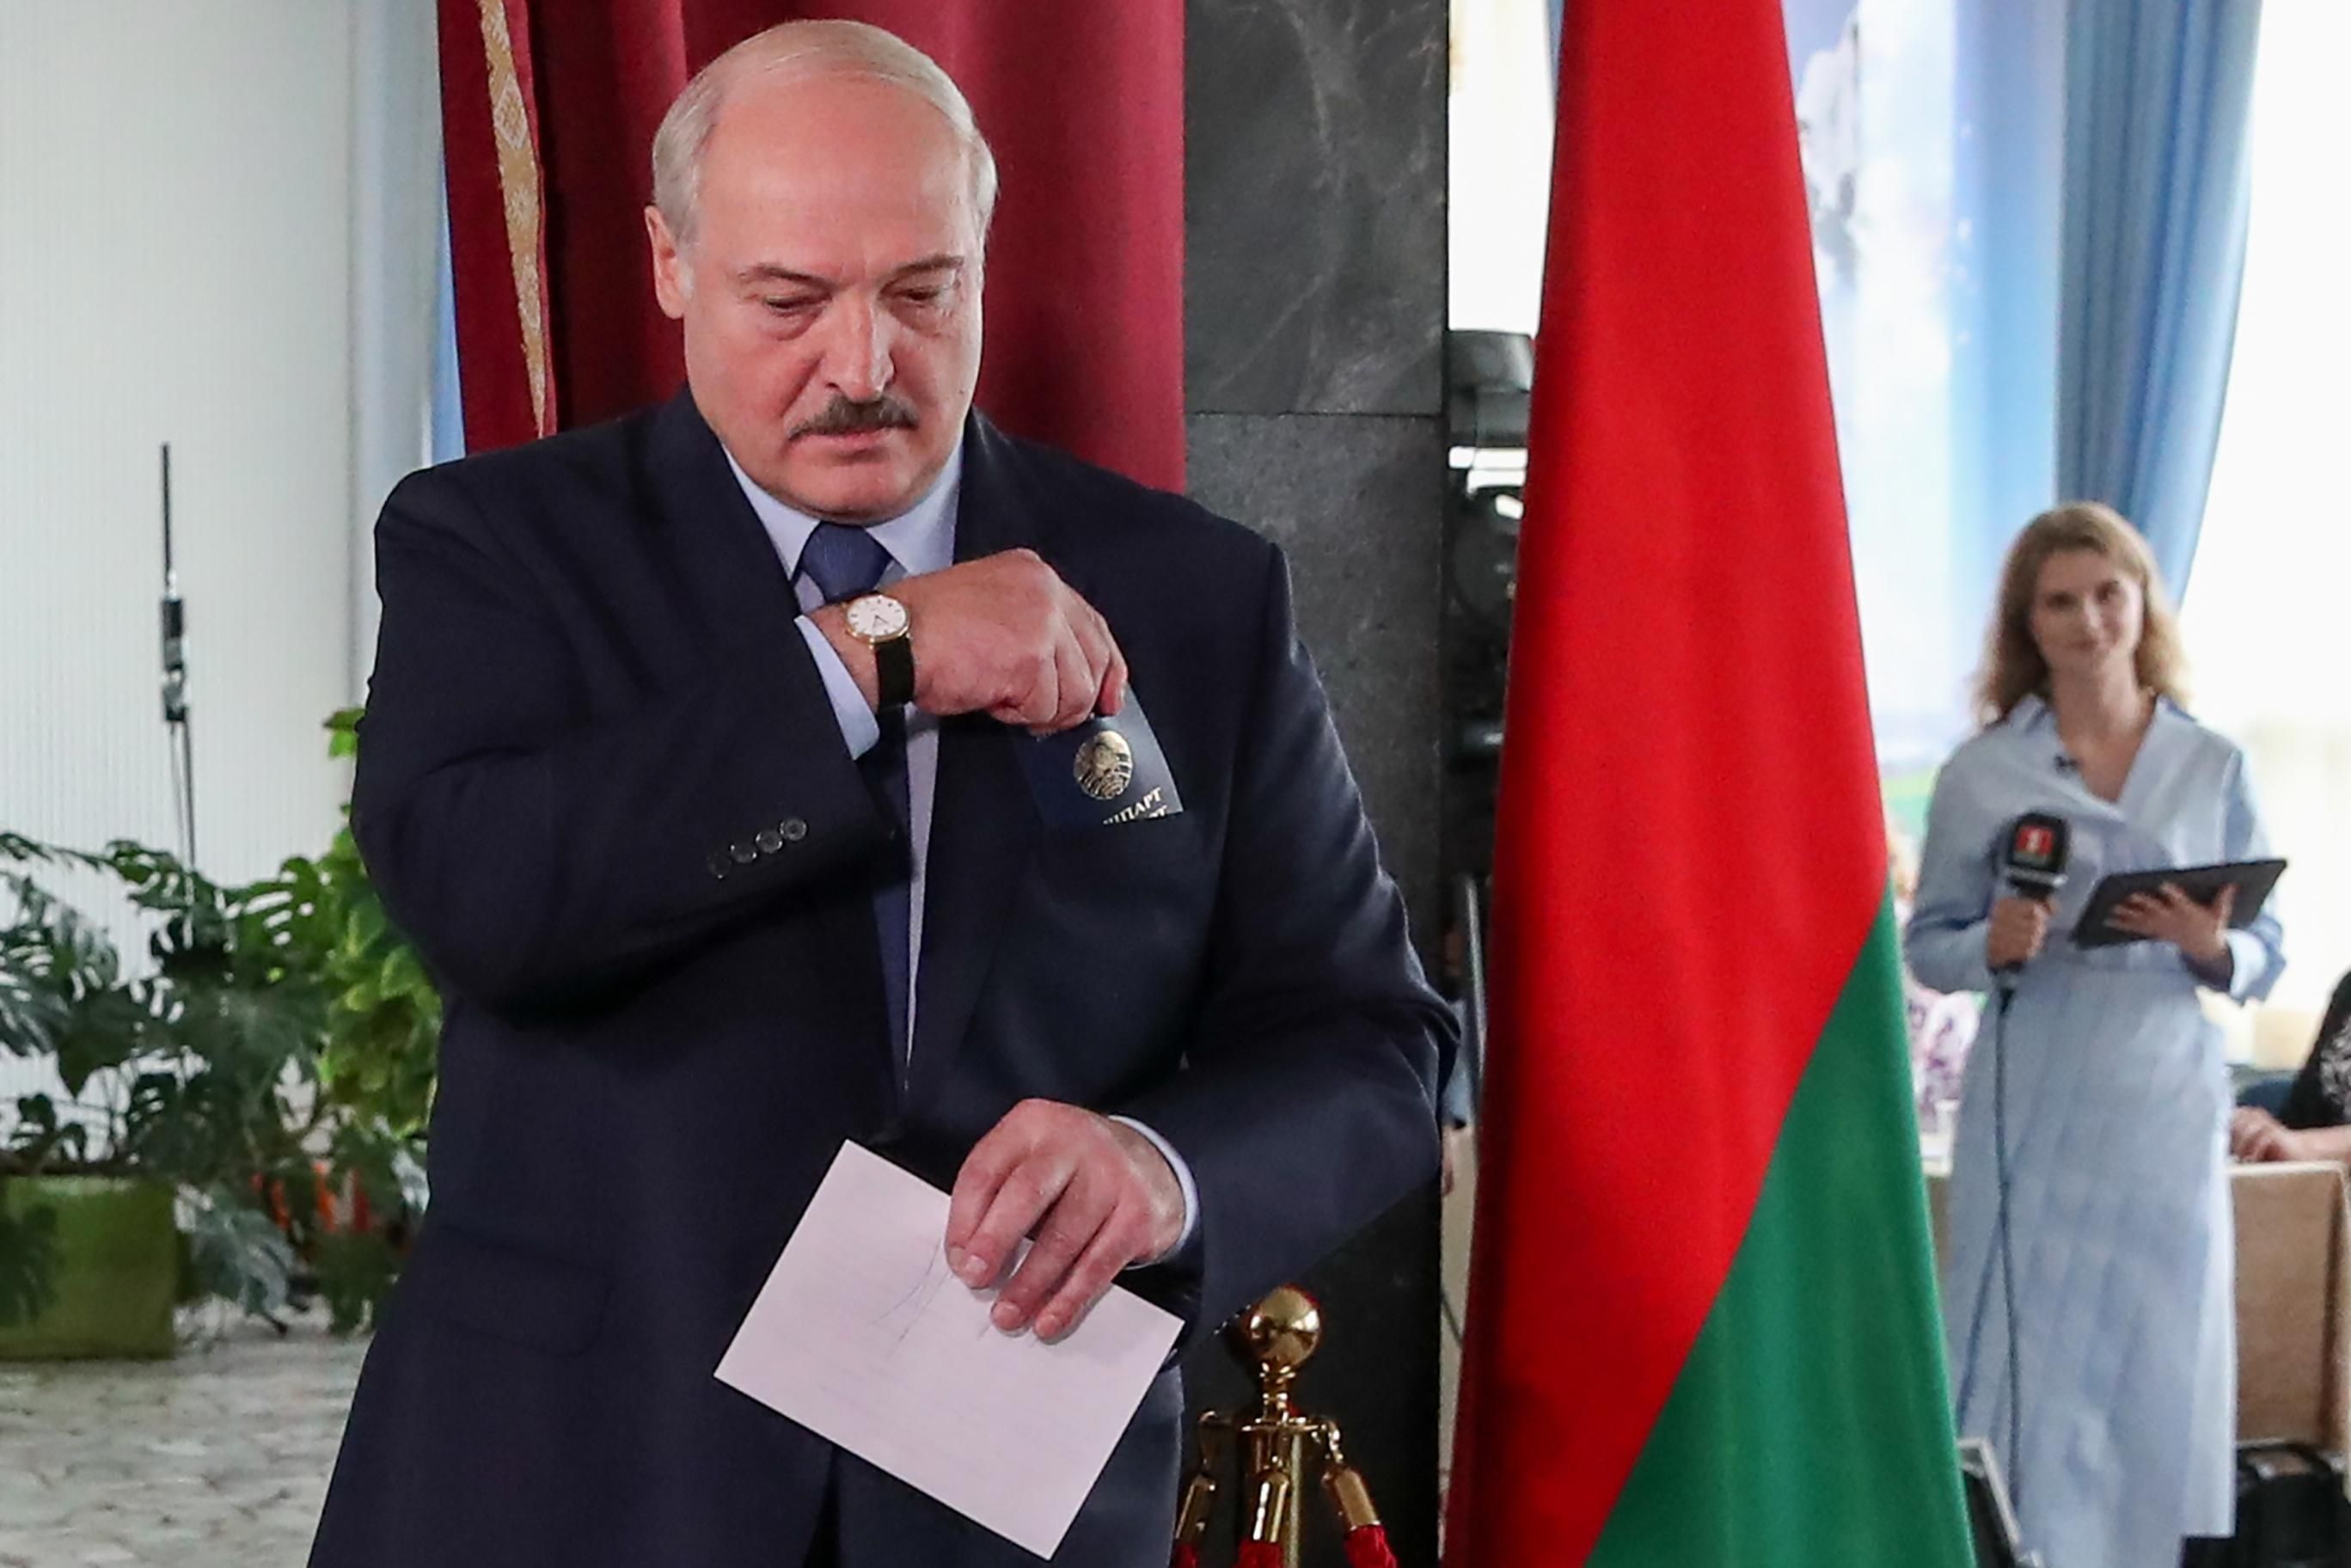 У Раді вимагають припинити будь-які дипломатичні відносини з режимом Лукашенка - Канал 24